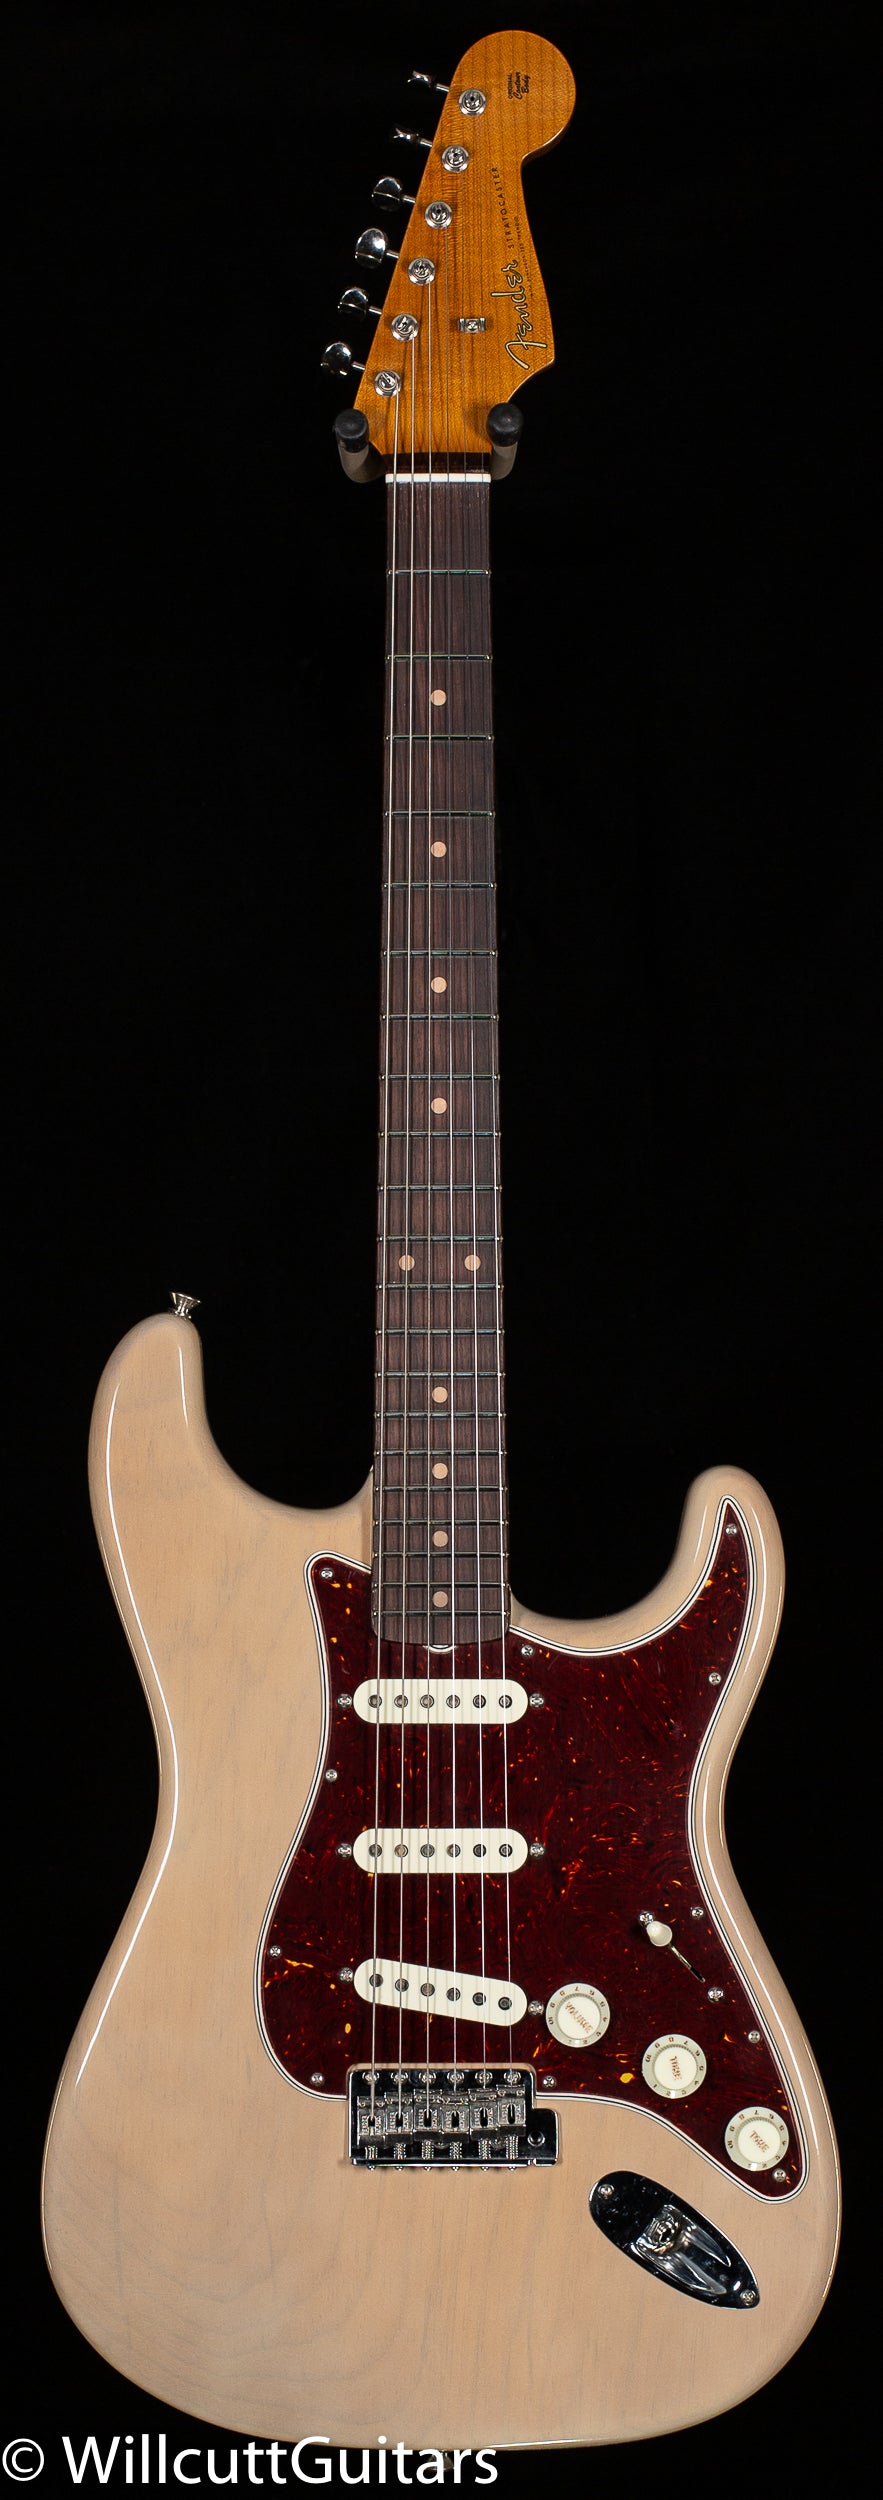 割引注文Fender Custom Shop Deluxe Stratocaster 2015 Satin Transparent Cobalt Blue With AAA Quilted Maple Top フェンダー カスタムショップ フェンダー